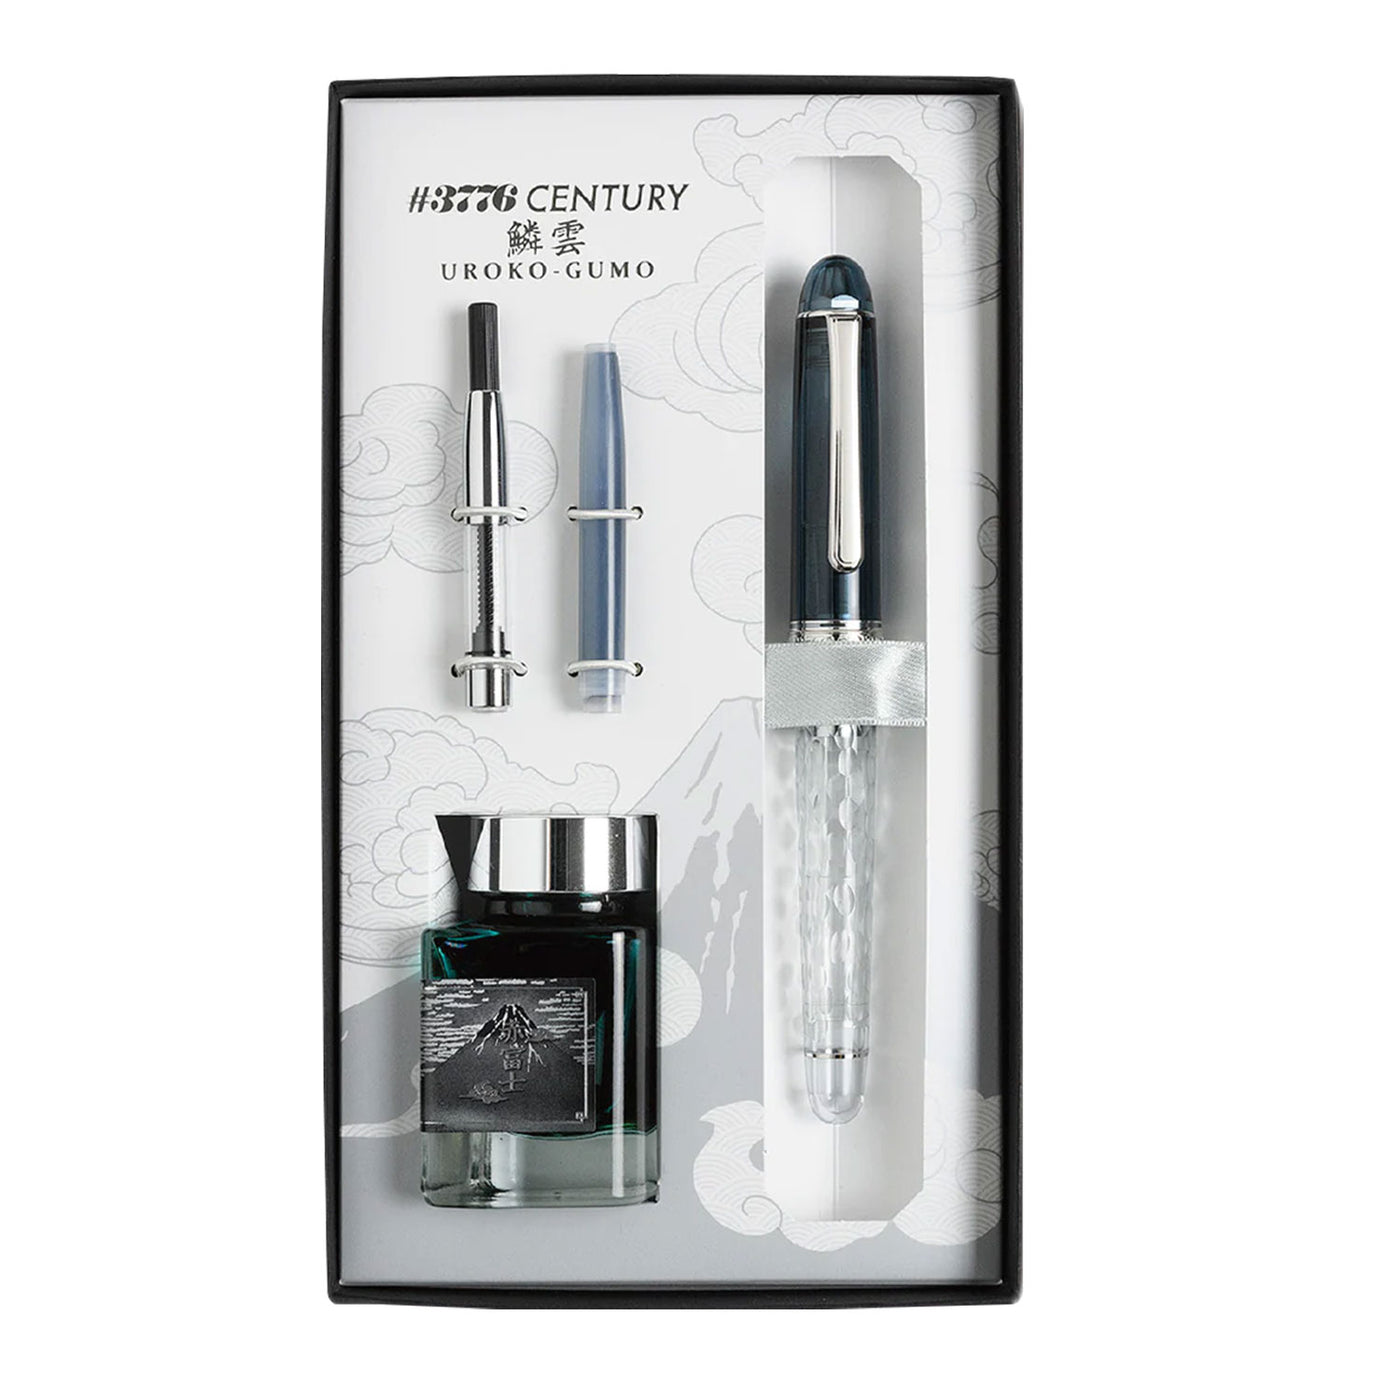 Platinum 3776 Century Fuji Series Fountain Pen - Uroko Gumo (Limited Edition) 5